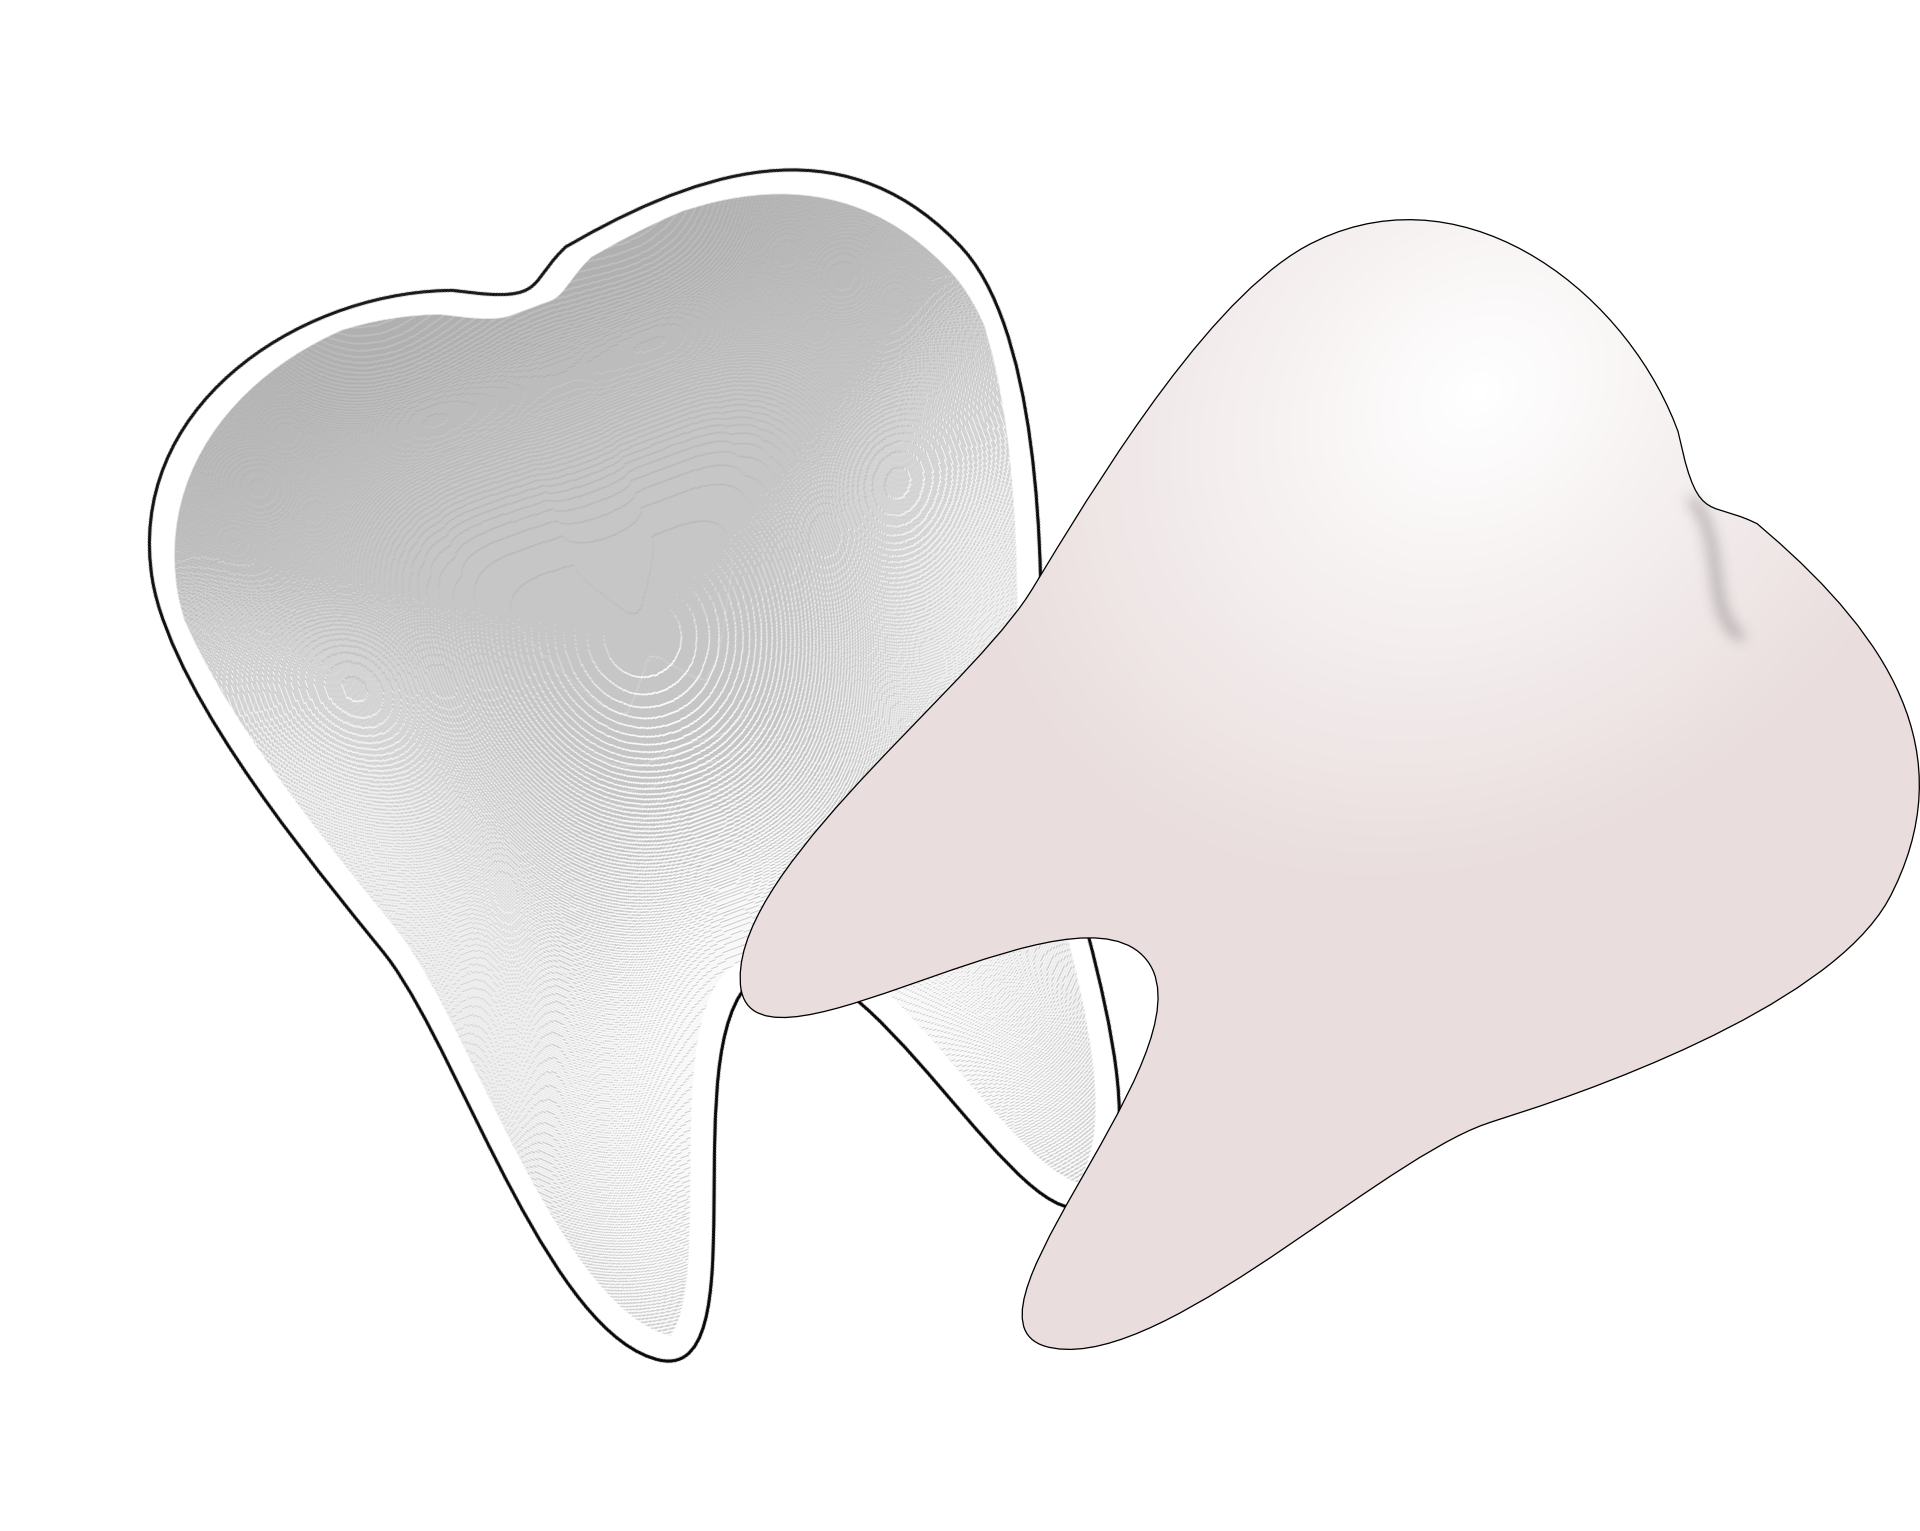 Cartoon teeth, dental, molar tooth vector